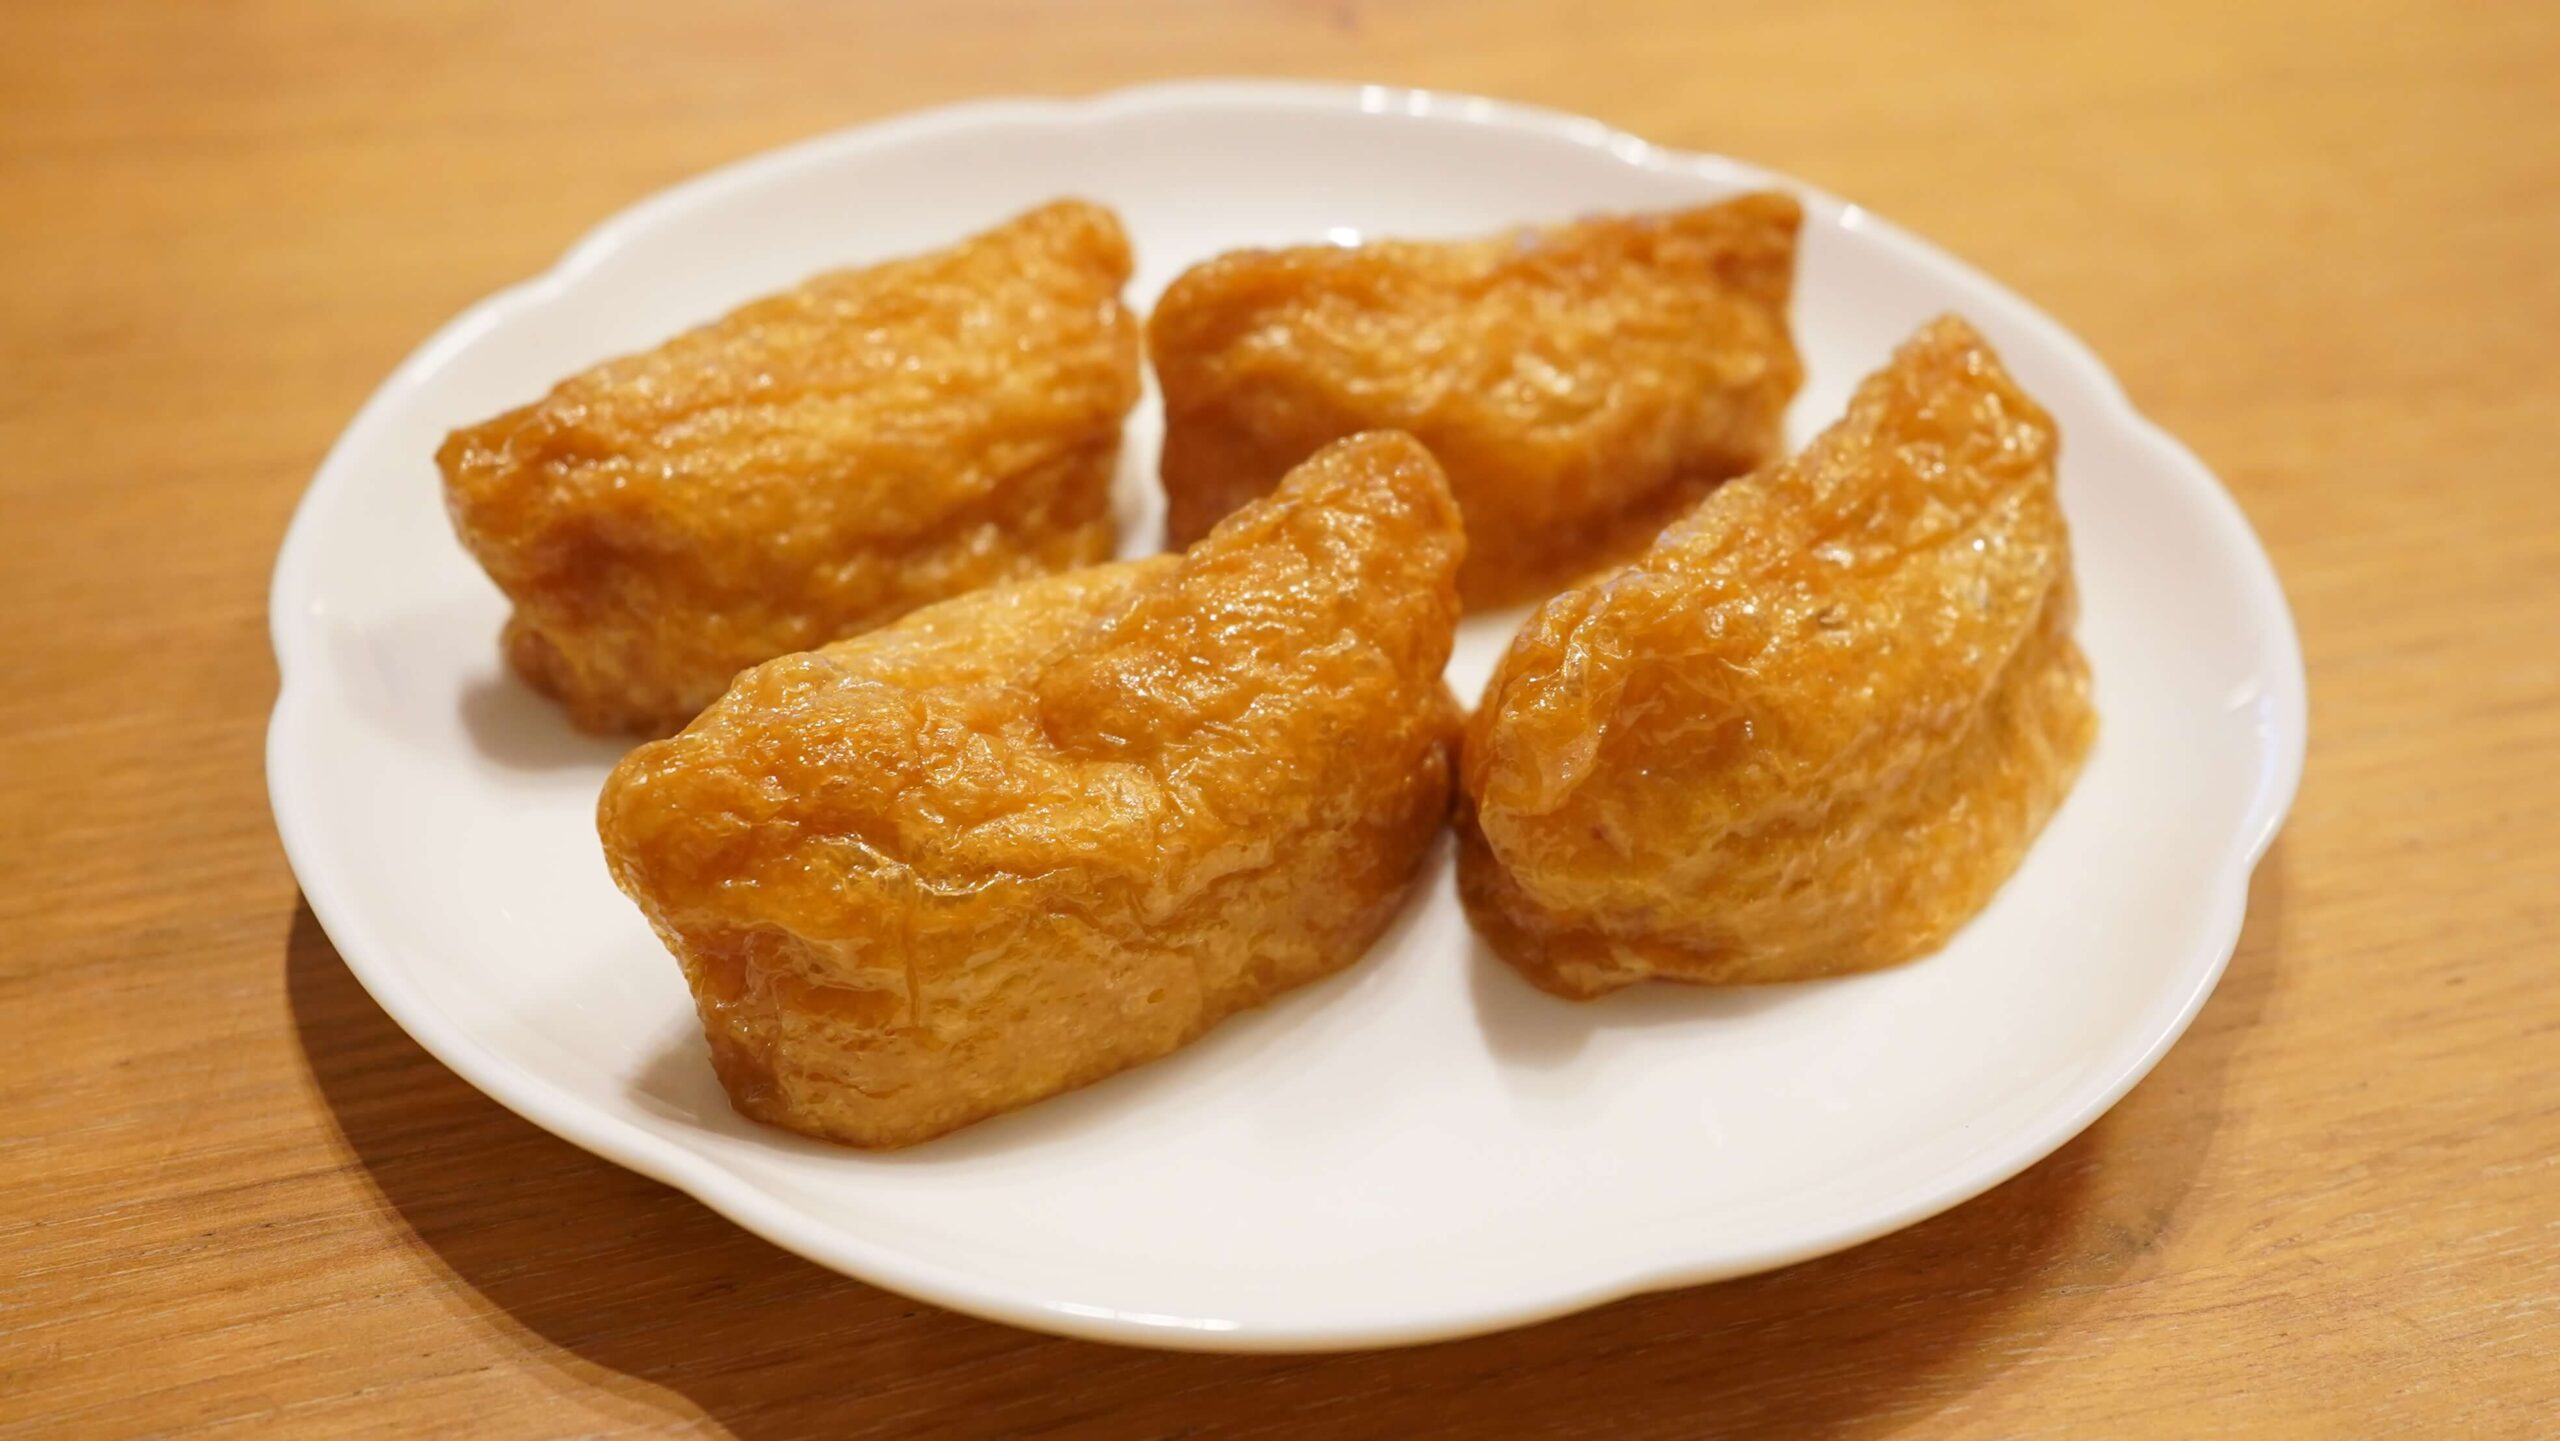 「ごはんの里」の冷凍食品「五目いなり寿司」の加熱後の写真